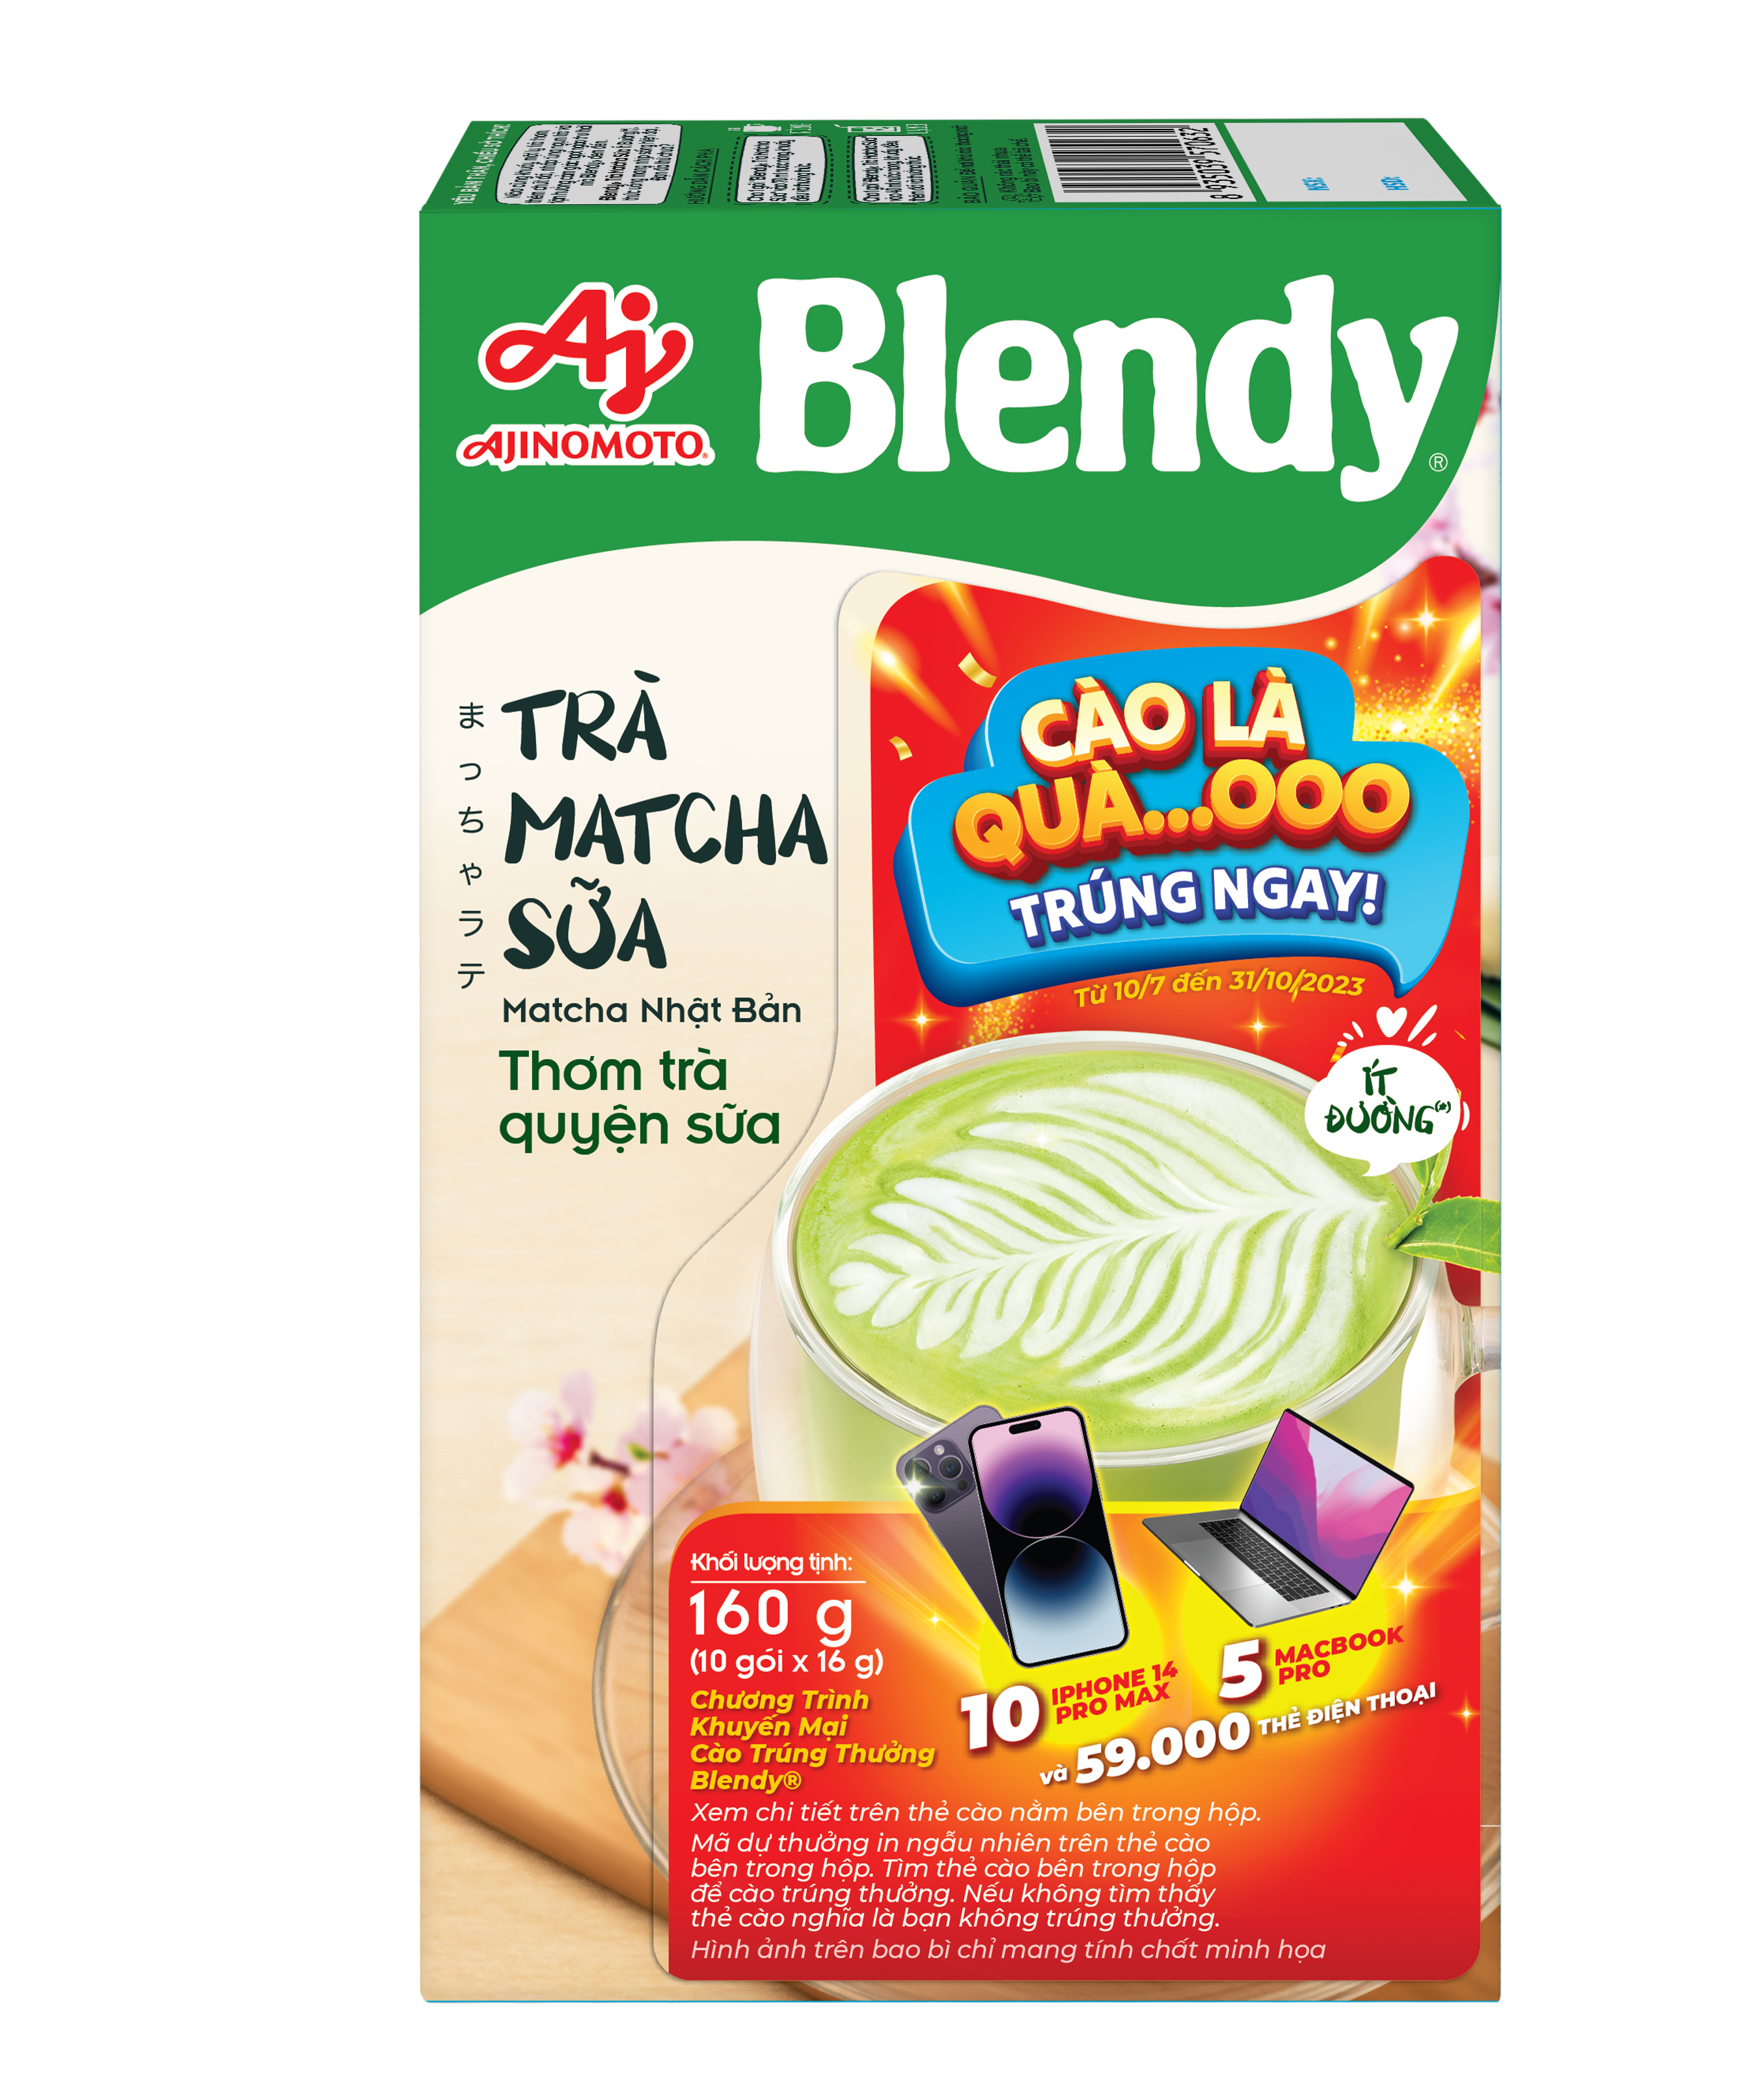 [BAO BÌ TRÚNG THƯỞNG] Combo 2 Trà matcha sữa Blendy 160g